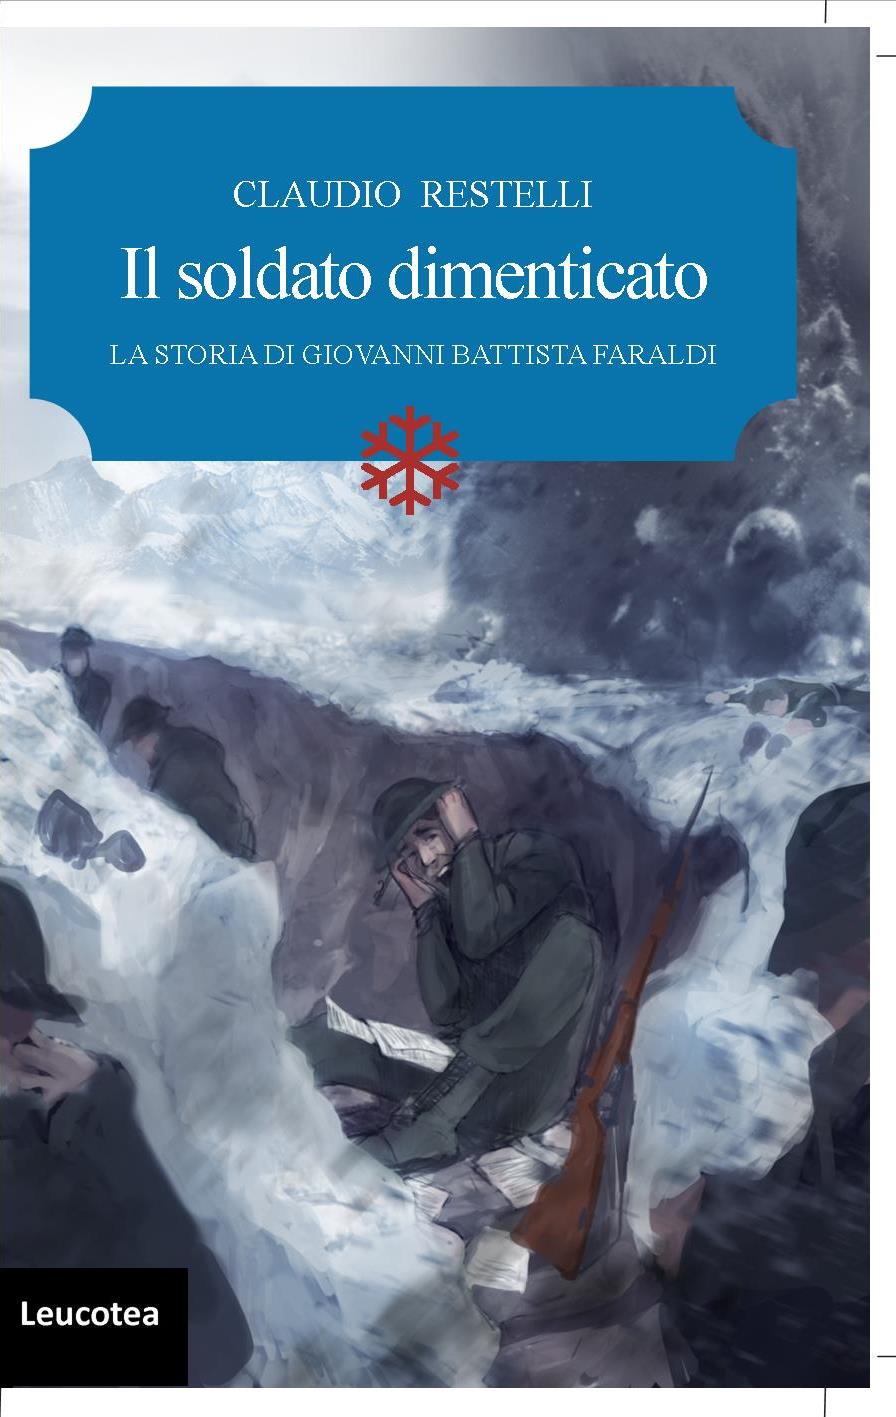 Edizioni Leucotea annuncia l’uscita del nuovo romanzo di Claudio Restelli “Il soldato dimenticato. La storia di Giovanni Battista Faraldi”.